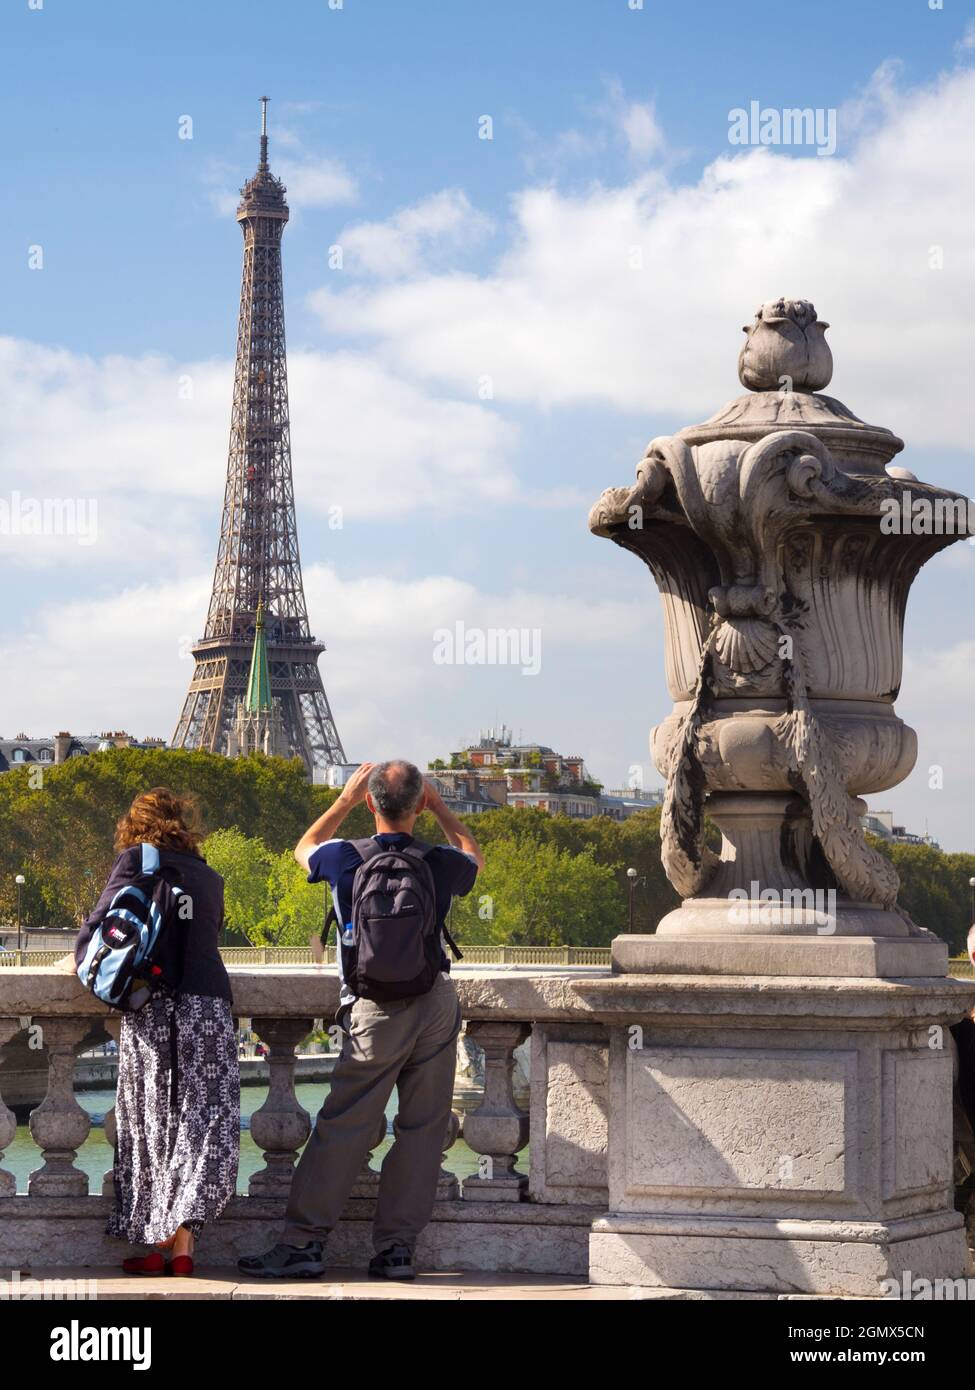 Paris, France - 18 septembre 2018 ; deux touristes en plein air construit pour l'exposition universelle de 1889, la tour Eiffel de 324 mètres (1,063 pieds) est devenue un c Banque D'Images